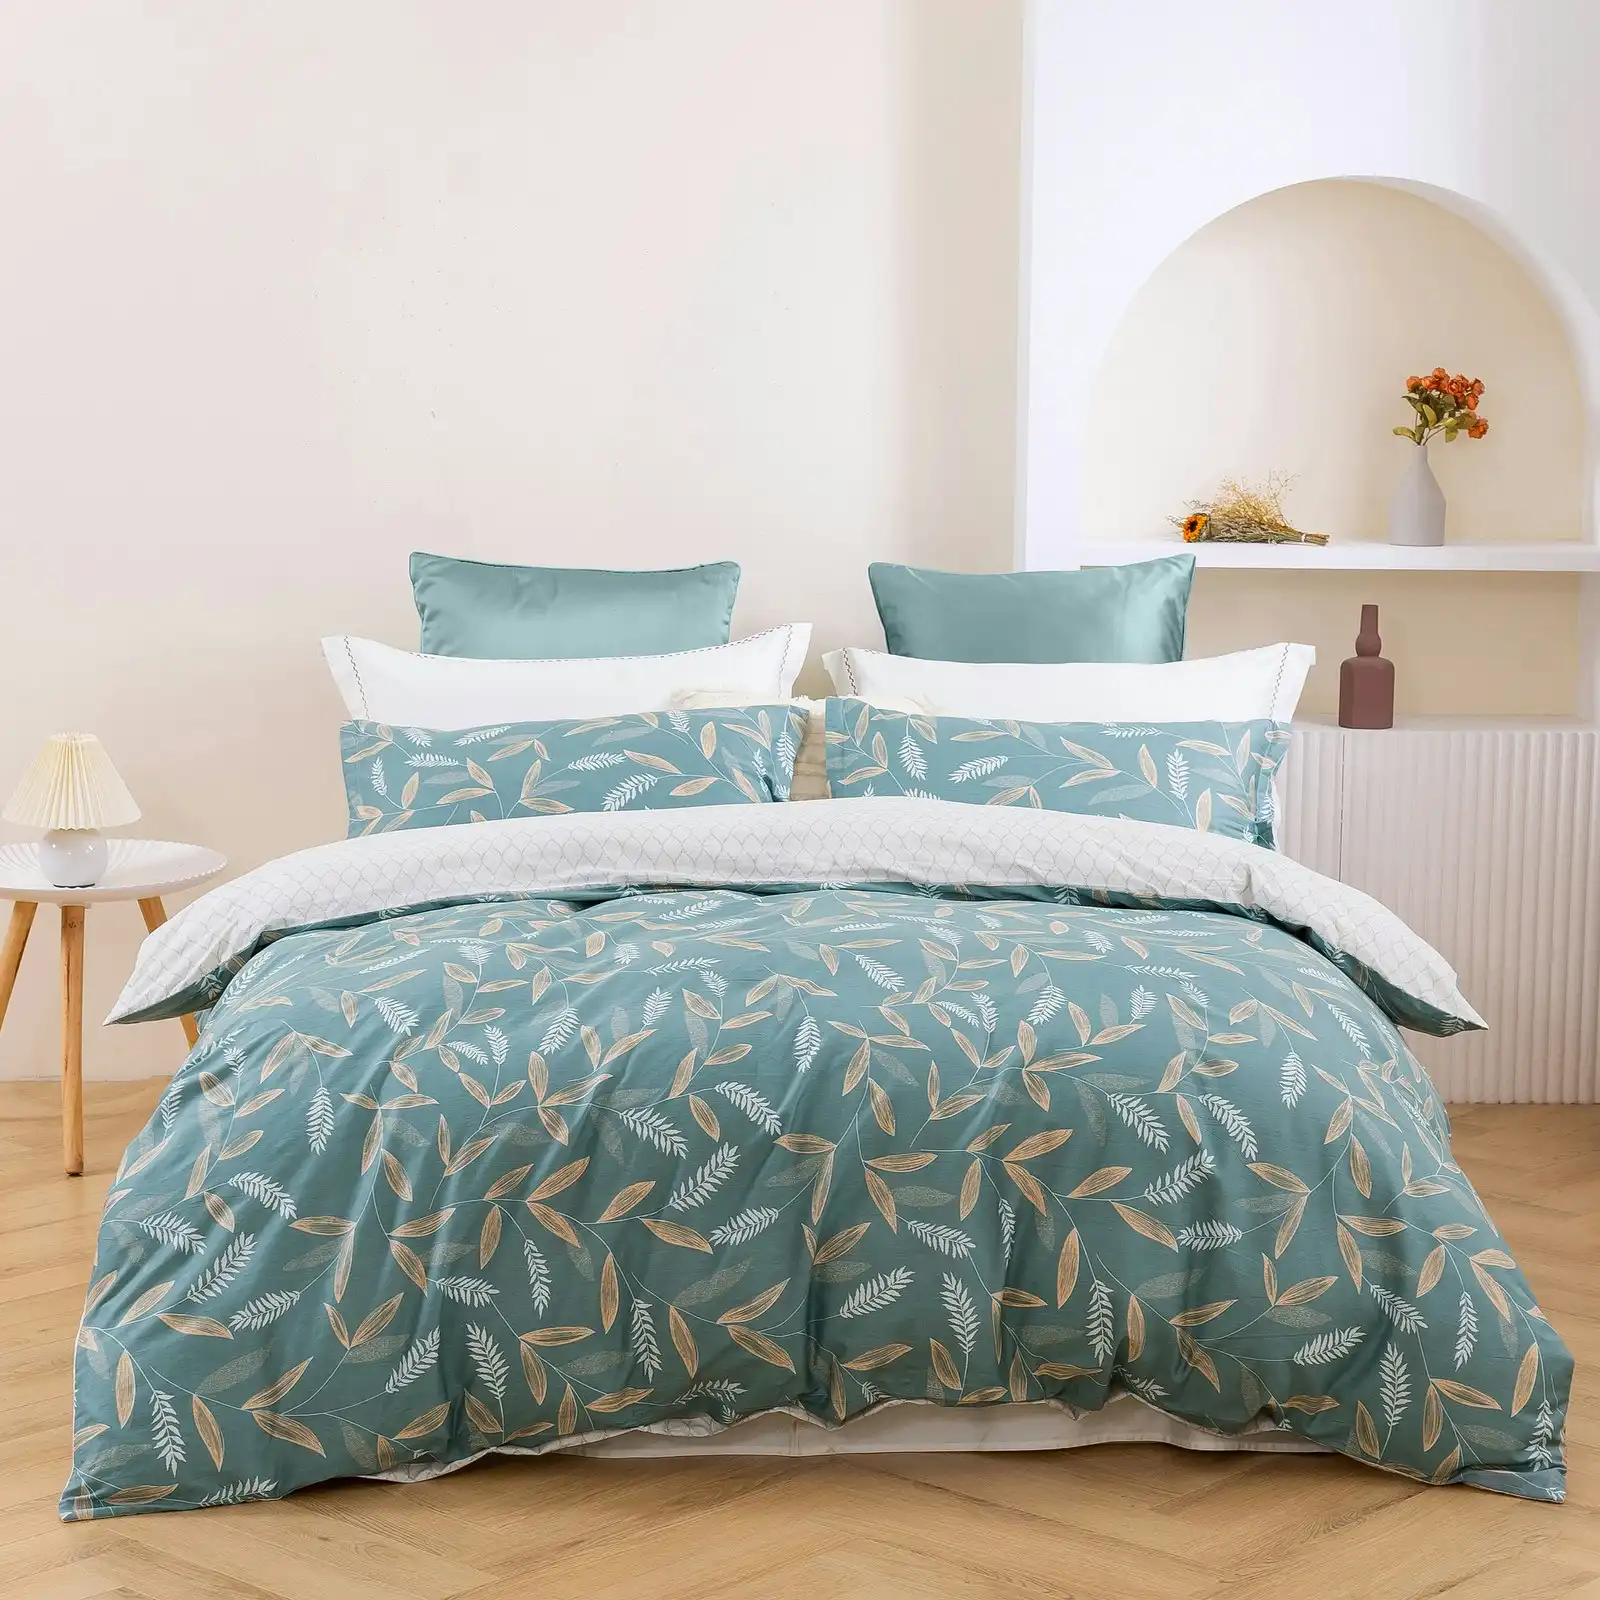 Dreamaker Foxtail 100% Cotton Reversible Quilt Cover Set Double Bed